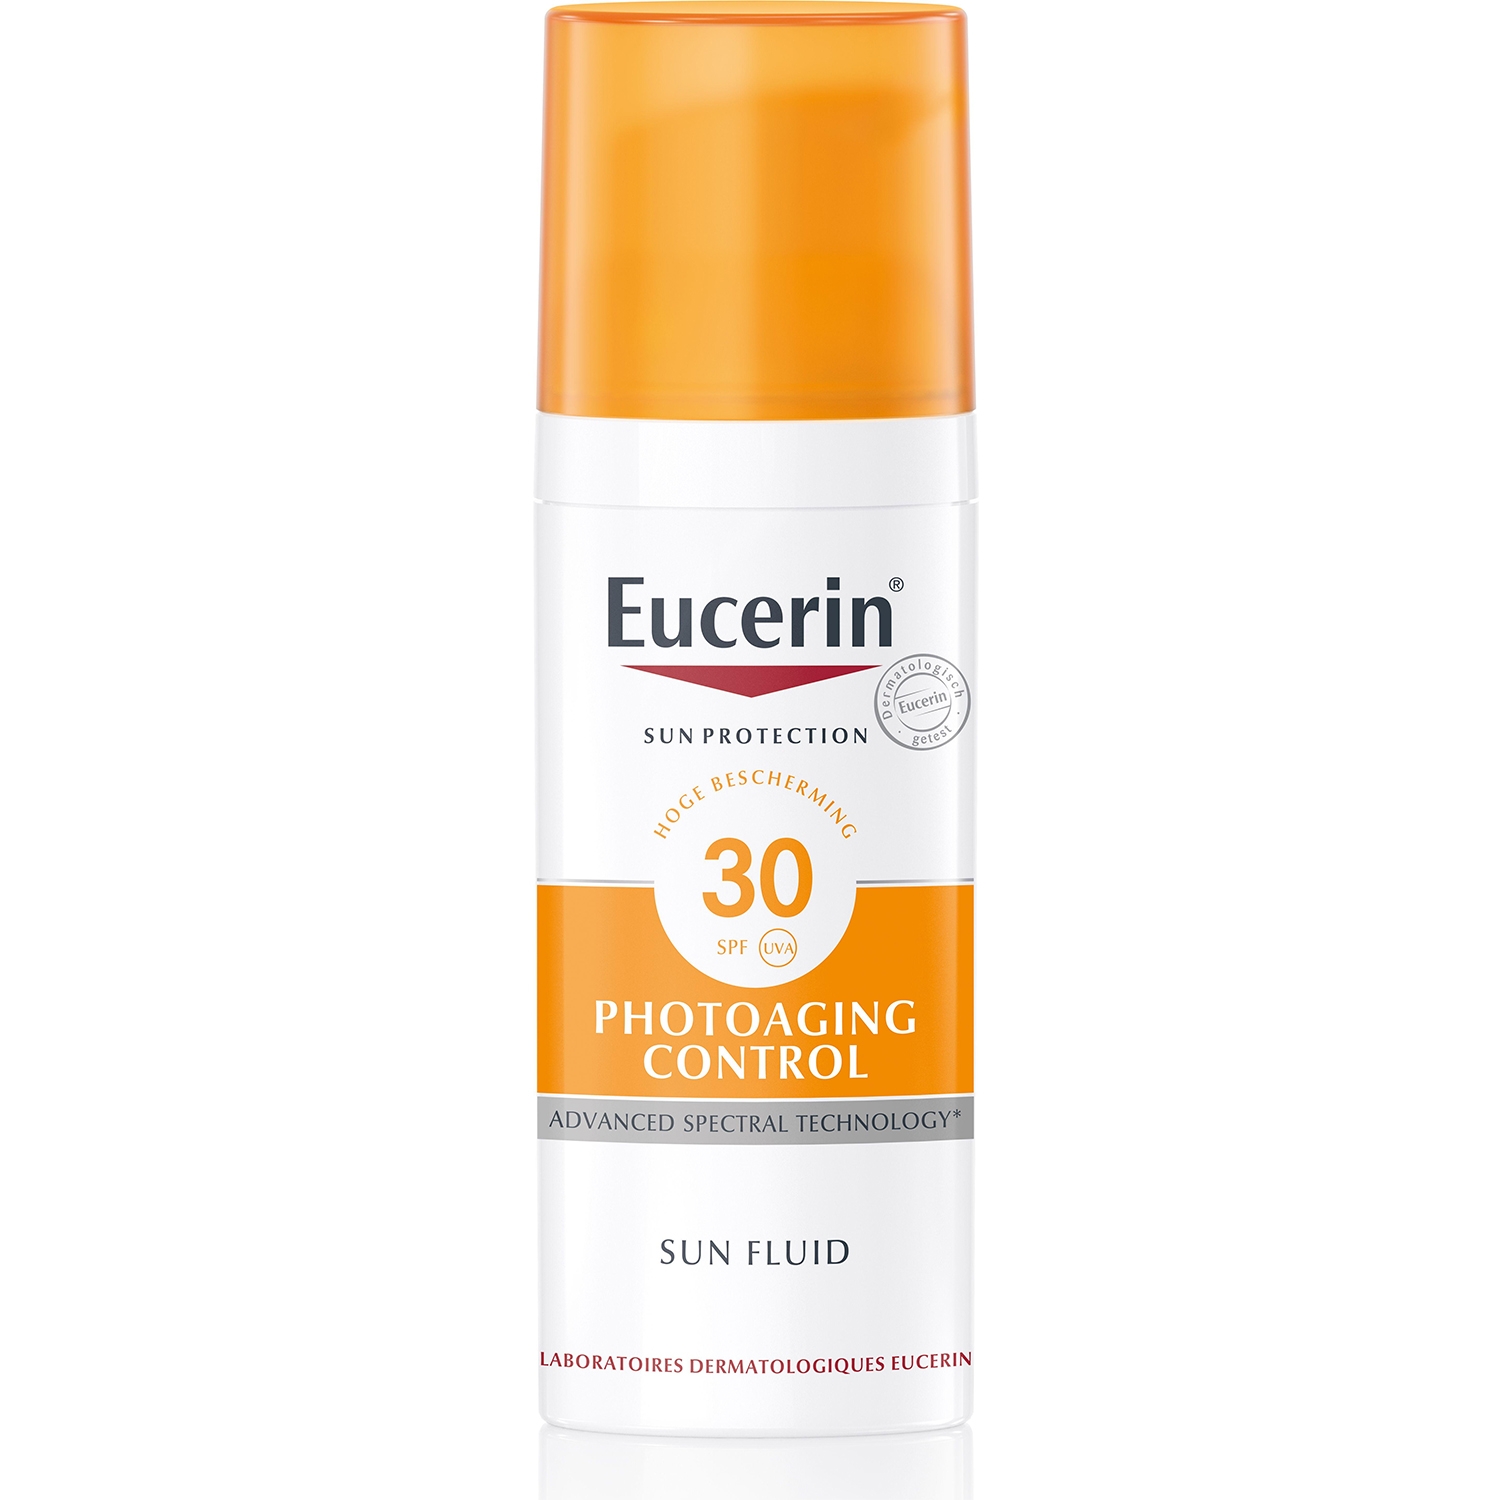 Eucerin sun fluid visage anti-age - 50 ml PARENT